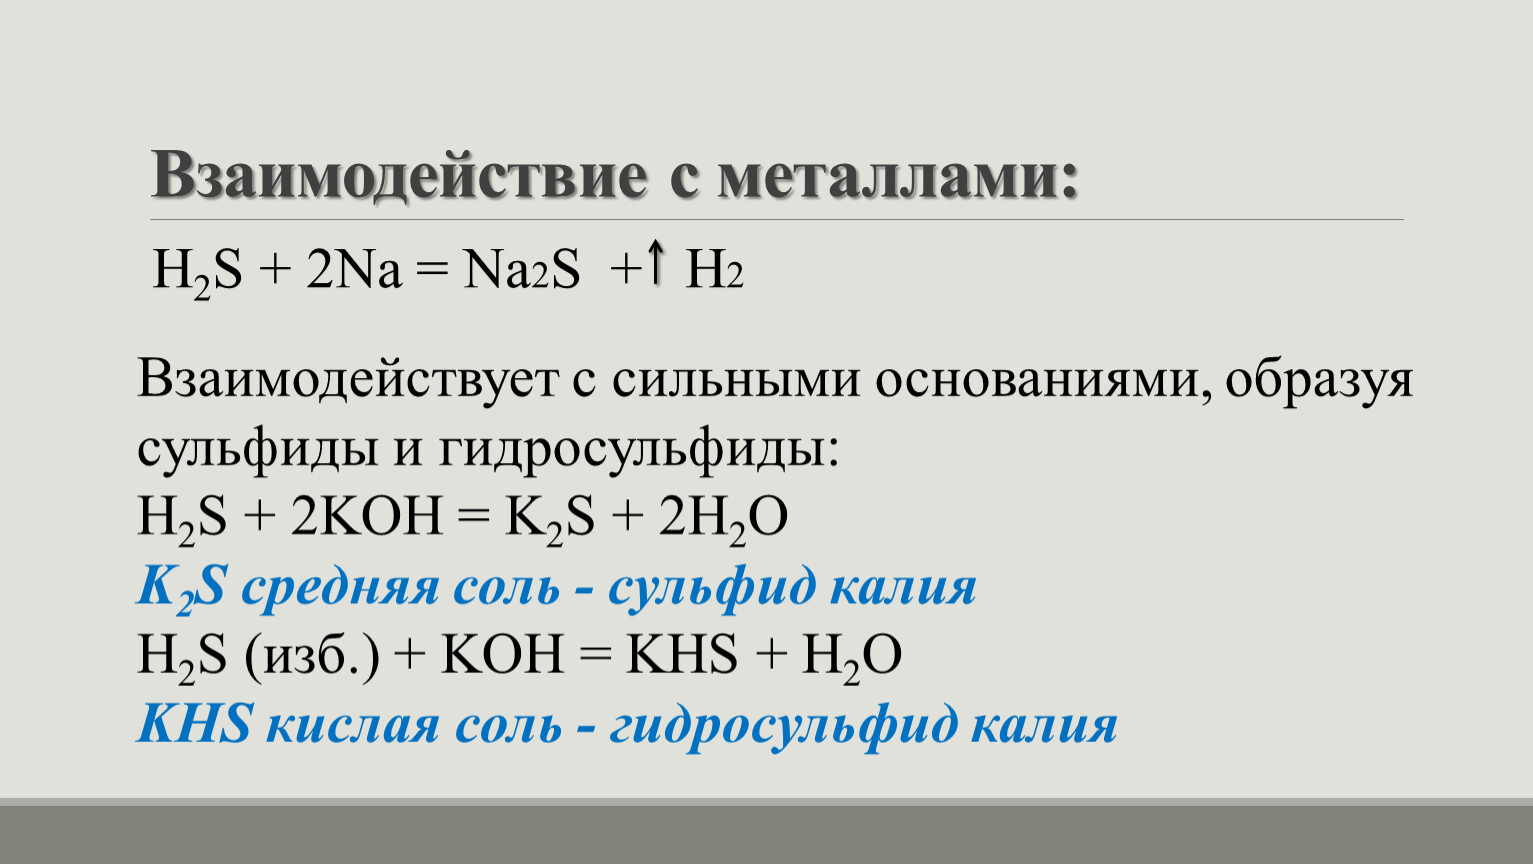 Гидросульфит калия и гидроксид калия. Металлы до h2. Гидросульфит натрия степень окисления. Гидросульфит степень окисления. Гидросульфит кальция.